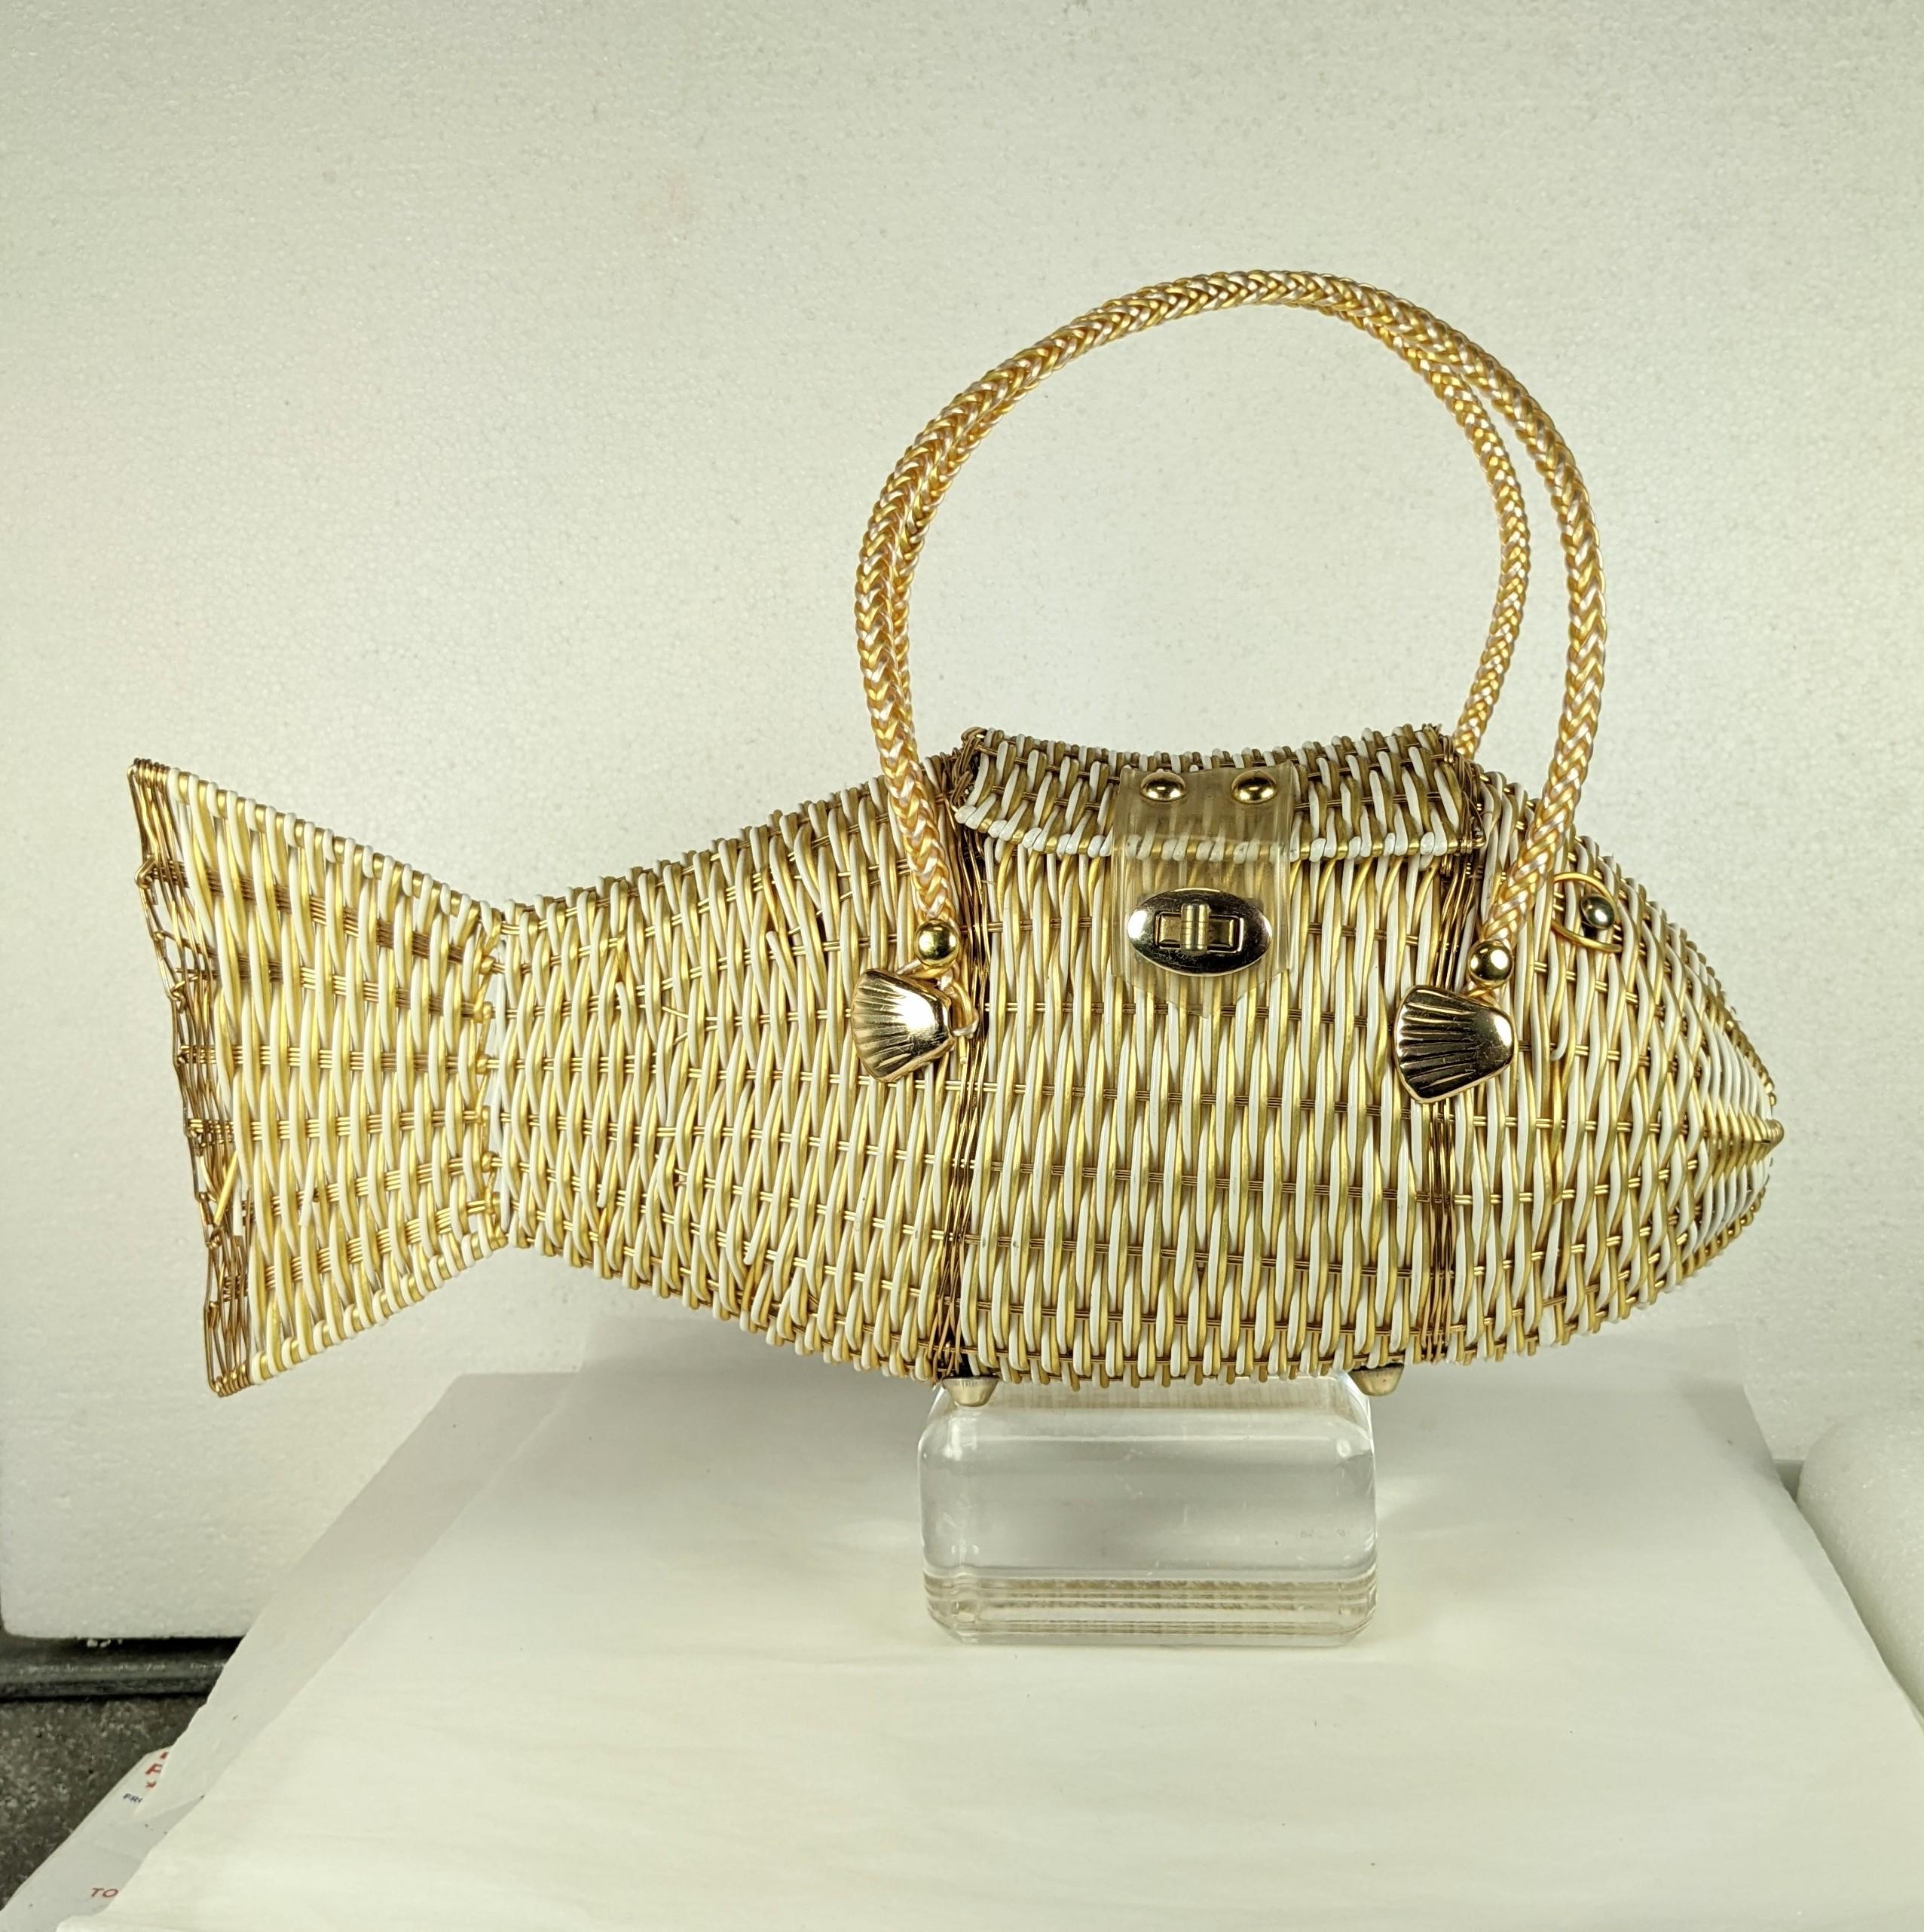 Charmante gewebte Fischtasche aus den 1960er Jahren, handgefertigt in Hongkong aus weißem und goldfarbenem Nylonfaden. Klappenverschluss mit Drehverschluss. Wirklich cool mit Baumwoll-Musselin-Futter und vergoldeten Flossen für Details. Perfekte